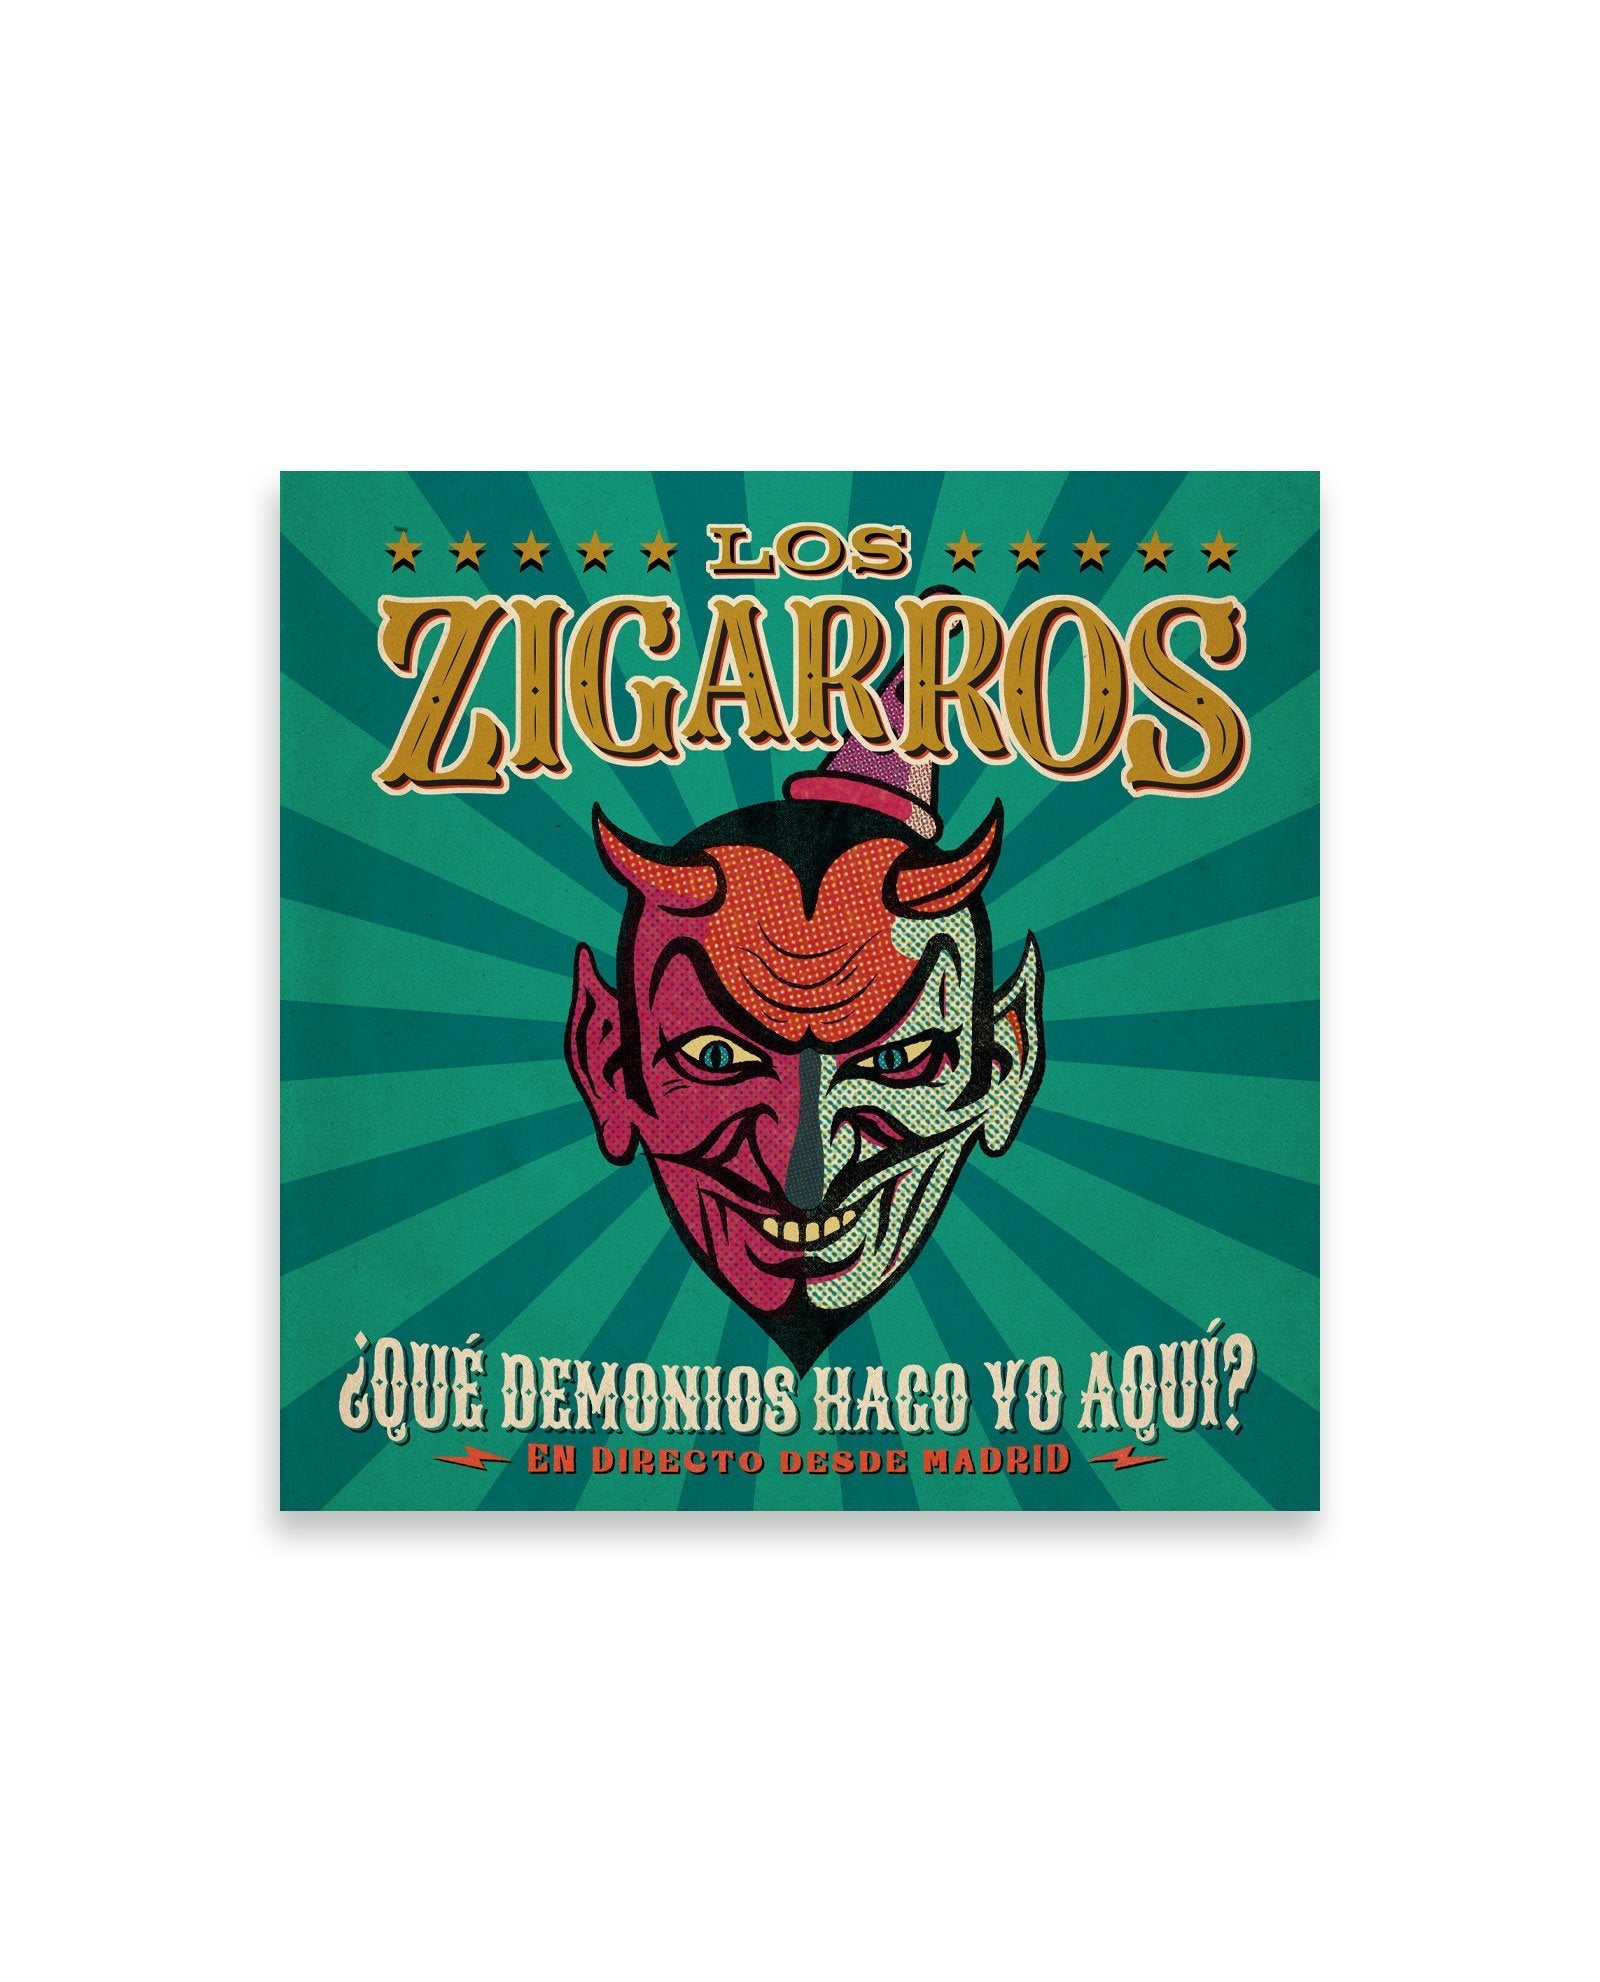 2 CDs + DVD - ¿Qué demonios hago yo aquí? En directo desde Madrid - Los Zigarros - Rocktud - Los Zigarros